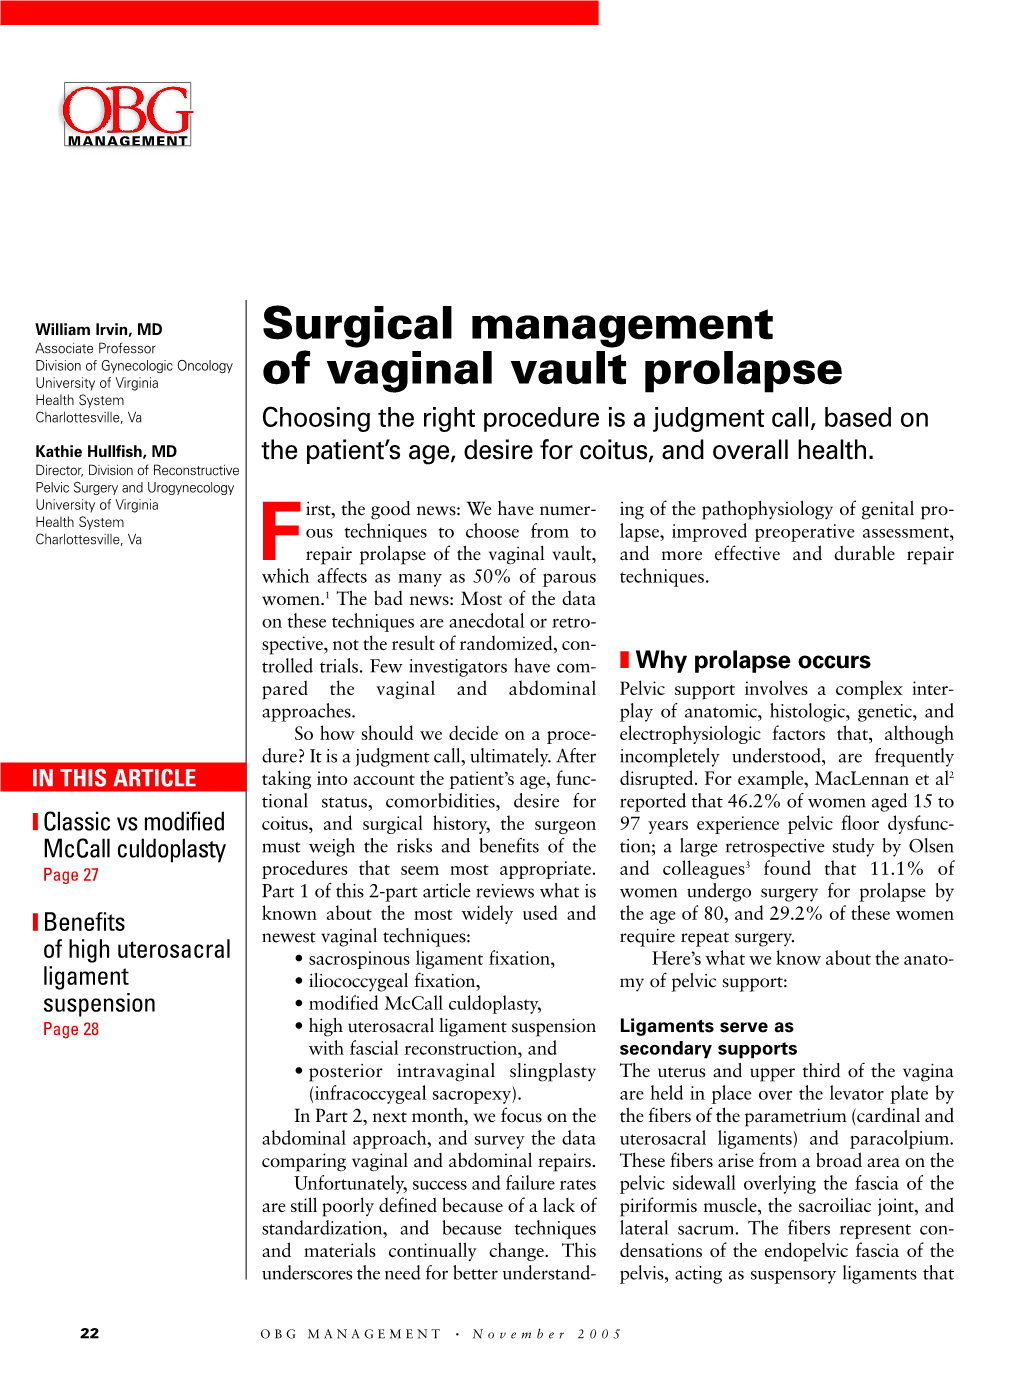 Surgical Management of Vaginal Vault Prolapse ▲